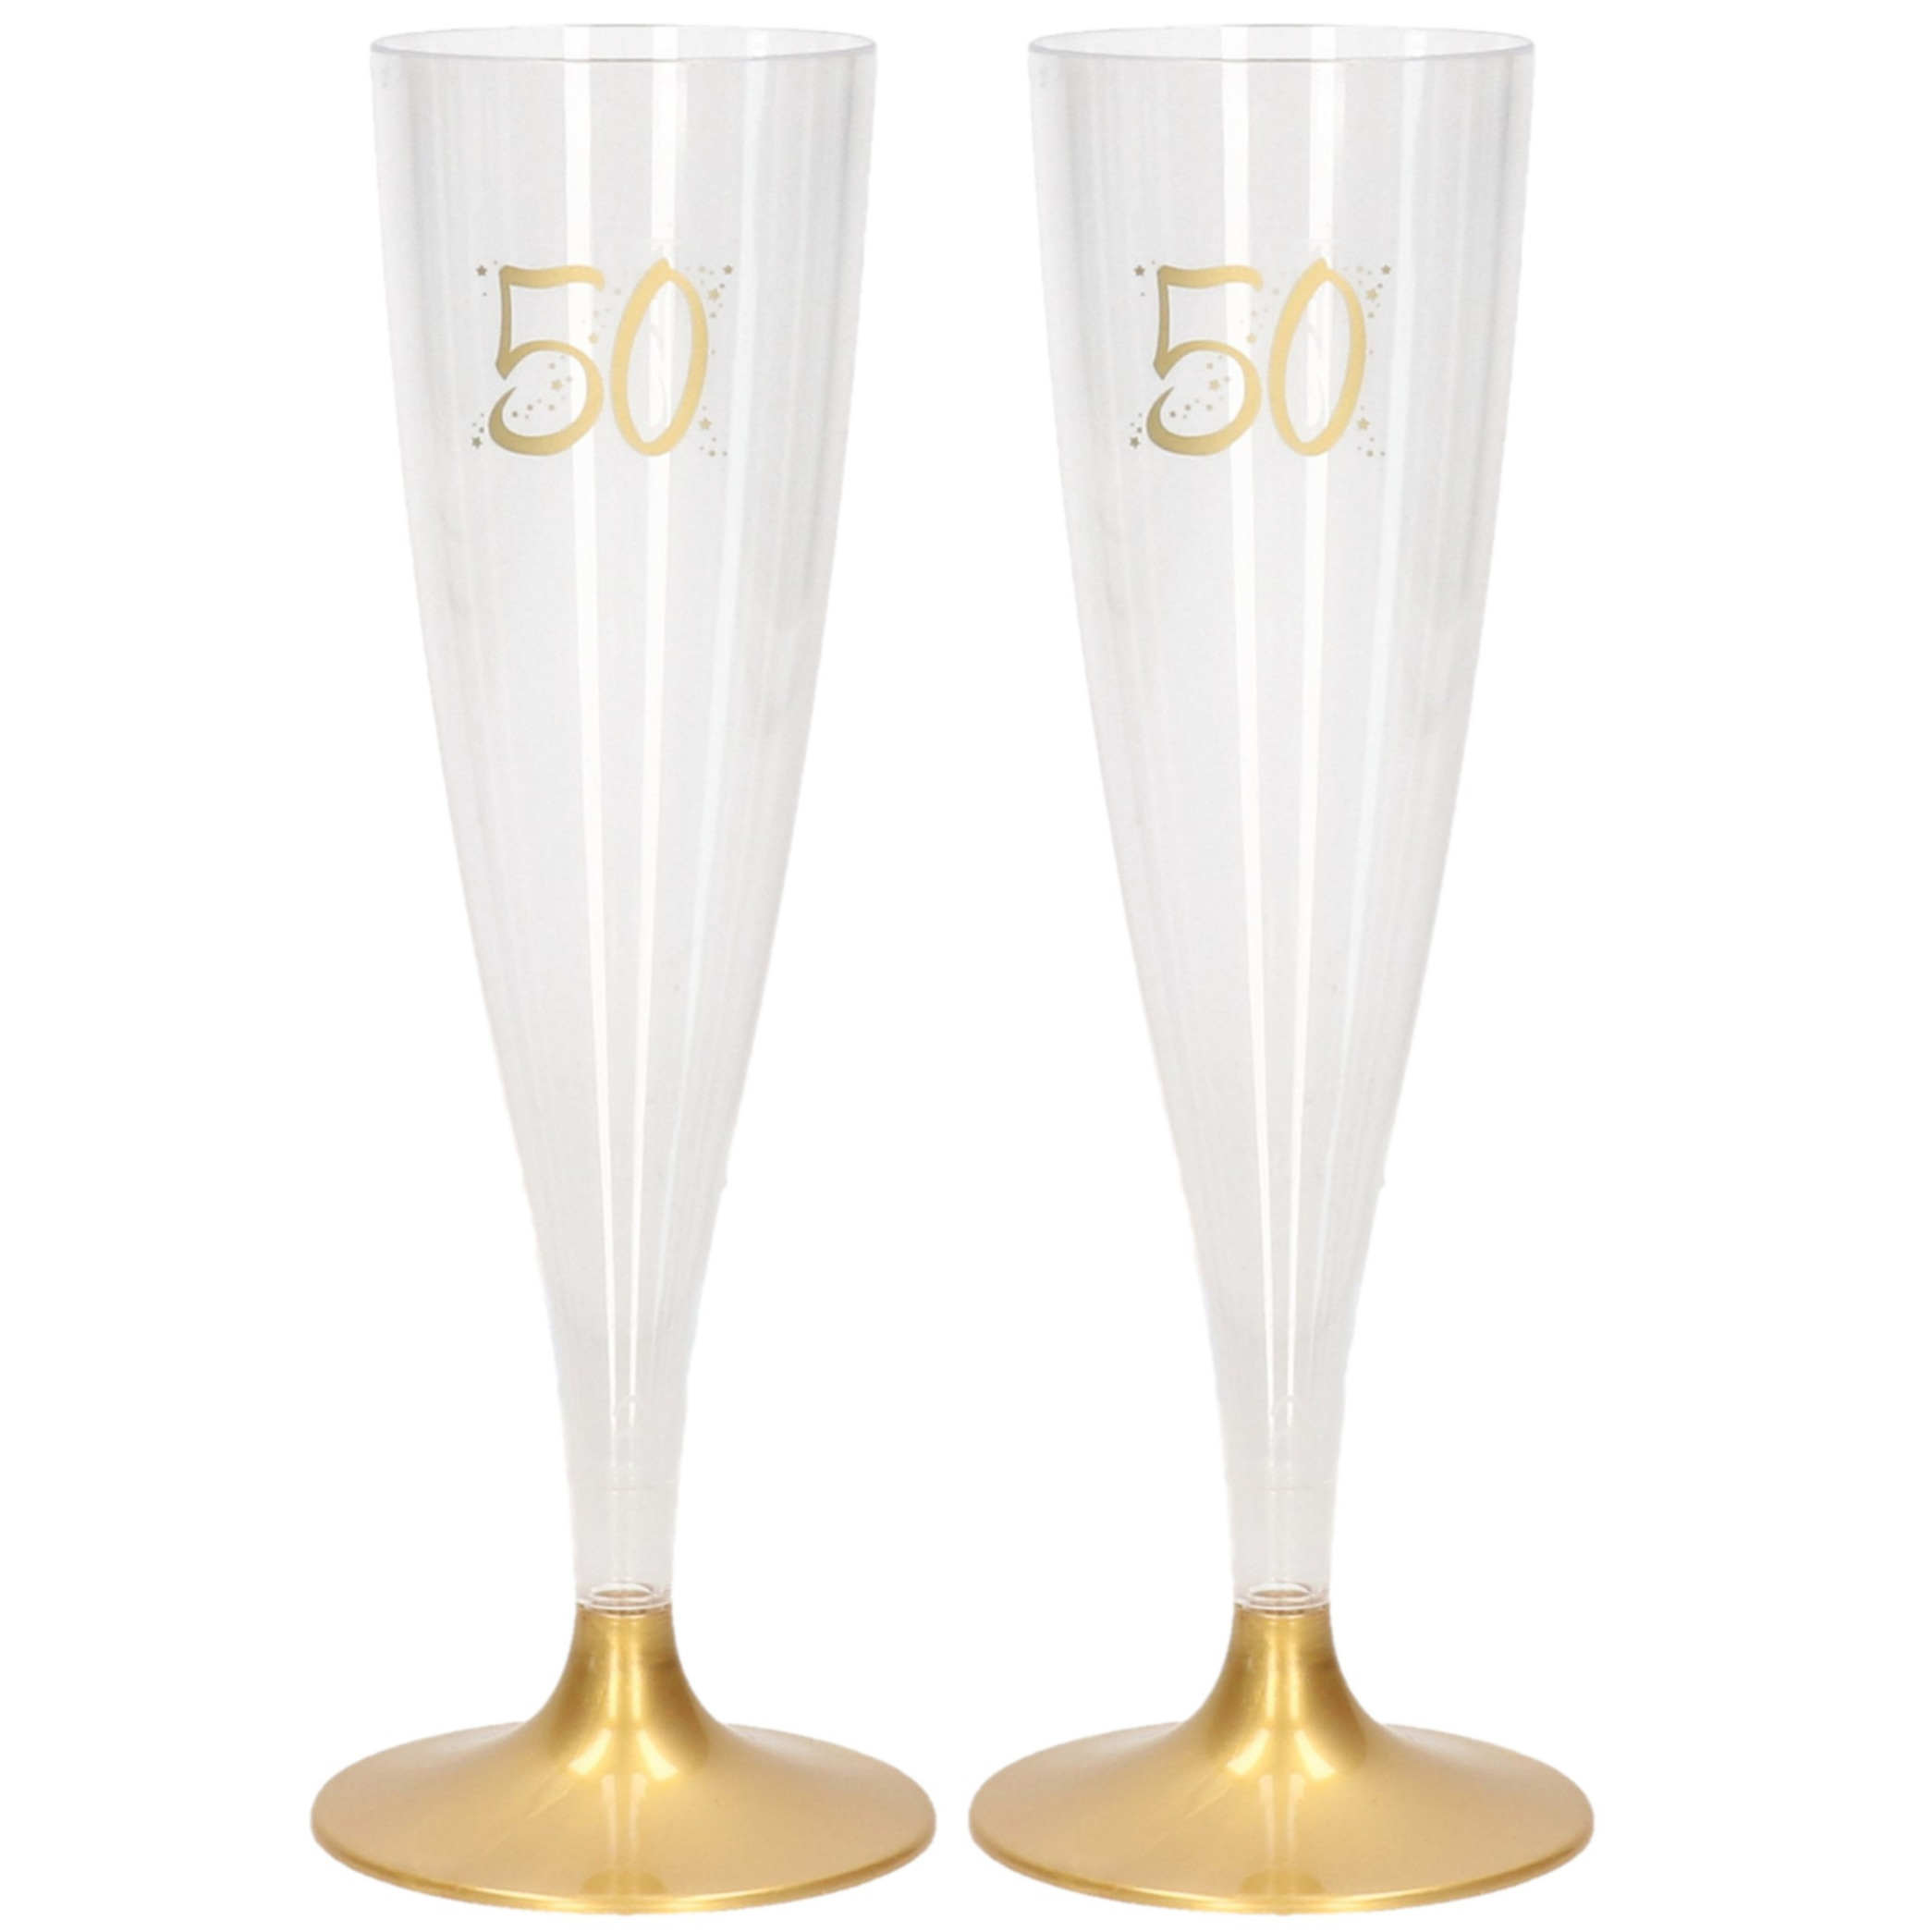 60x Champagneglazen/flutes 14 cl/140 ml van kunststof met gouden voet - Abraham/Sarah/50 jaar